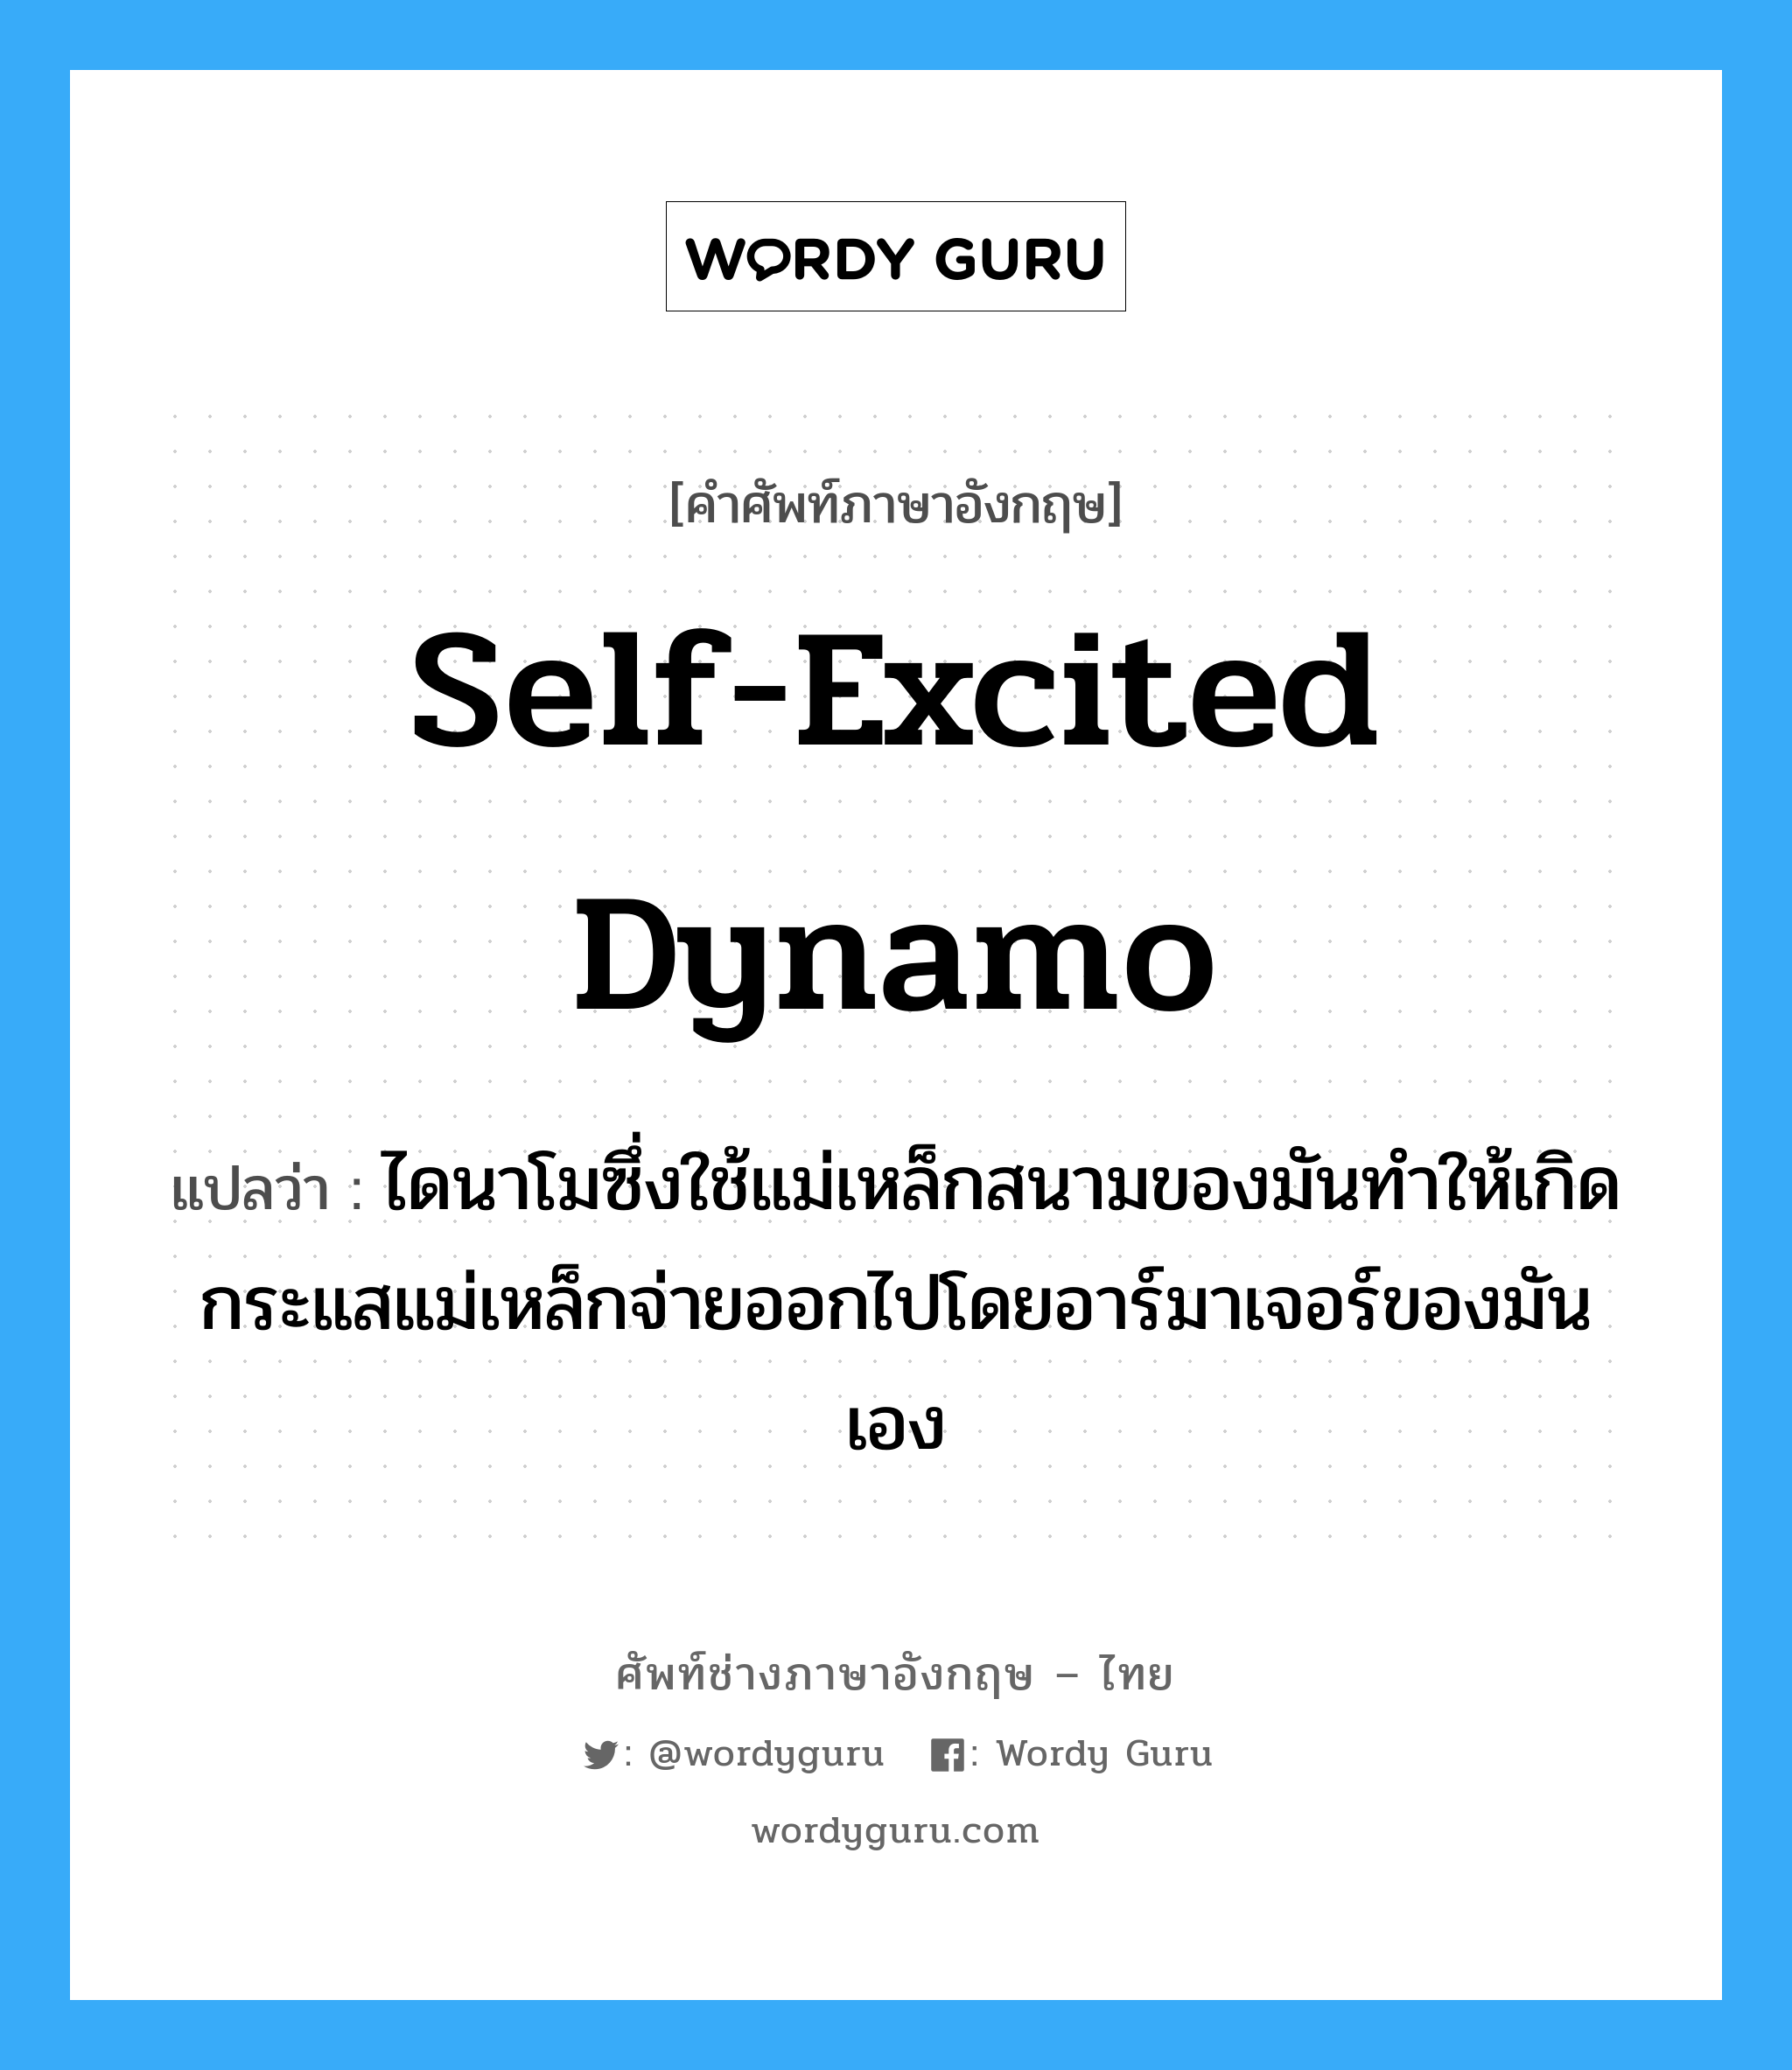 self-excited dynamo แปลว่า?, คำศัพท์ช่างภาษาอังกฤษ - ไทย self-excited dynamo คำศัพท์ภาษาอังกฤษ self-excited dynamo แปลว่า ไดนาโมซึ่งใช้แม่เหล็กสนามของมันทำให้เกิดกระแสแม่เหล็กจ่ายออกไปโดยอาร์มาเจอร์ของมันเอง